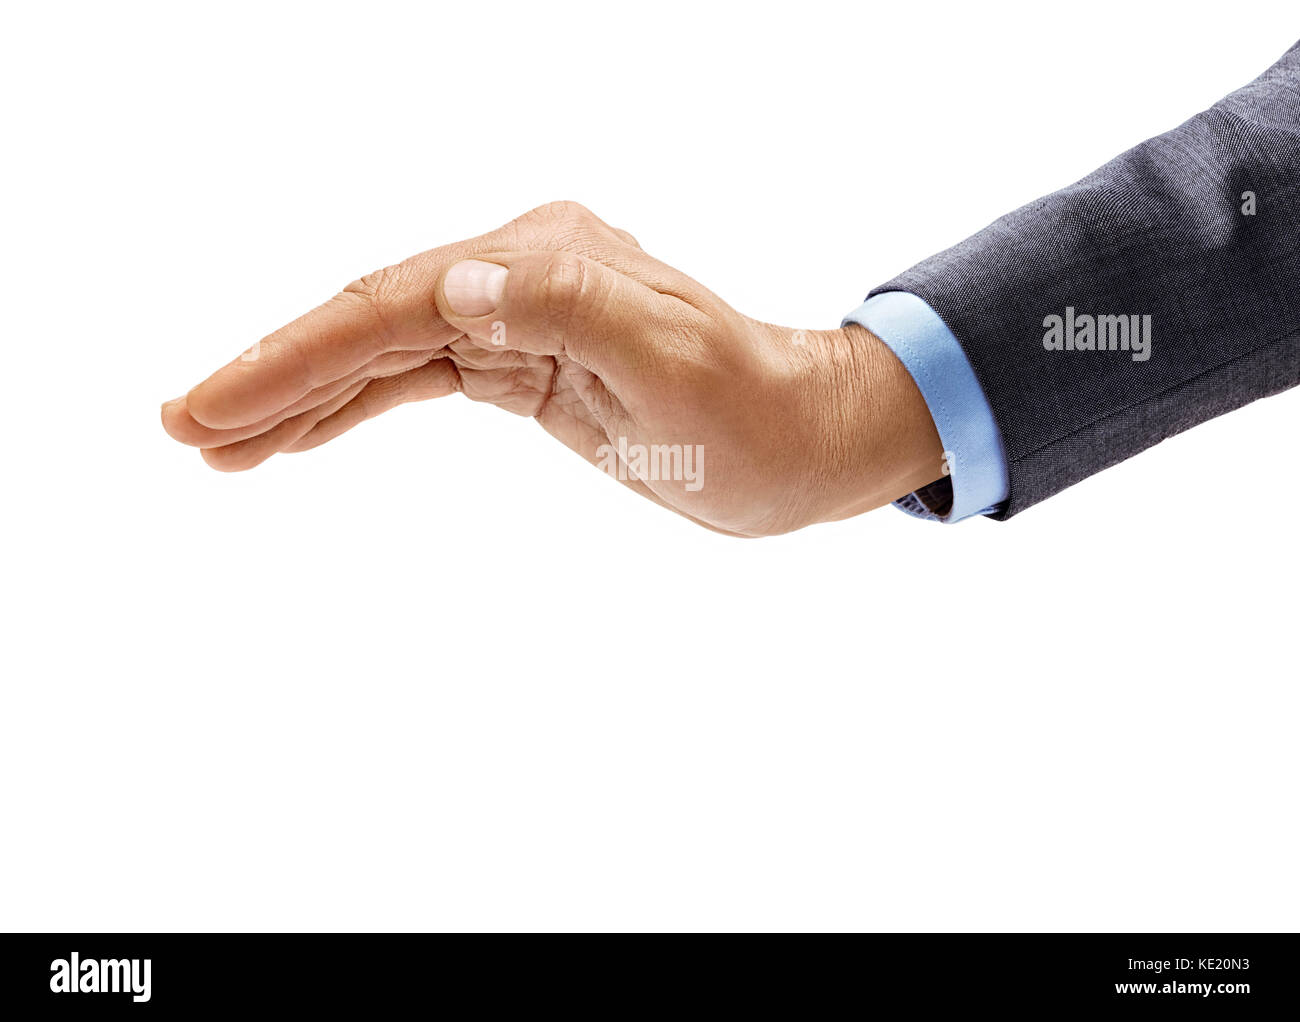 Des Menschen Hand in Anzug Zeichen auf weißem Hintergrund. invertiert Öffnen Sie Palm, Nahaufnahme, hohe Auflösung Produkt Stockfoto